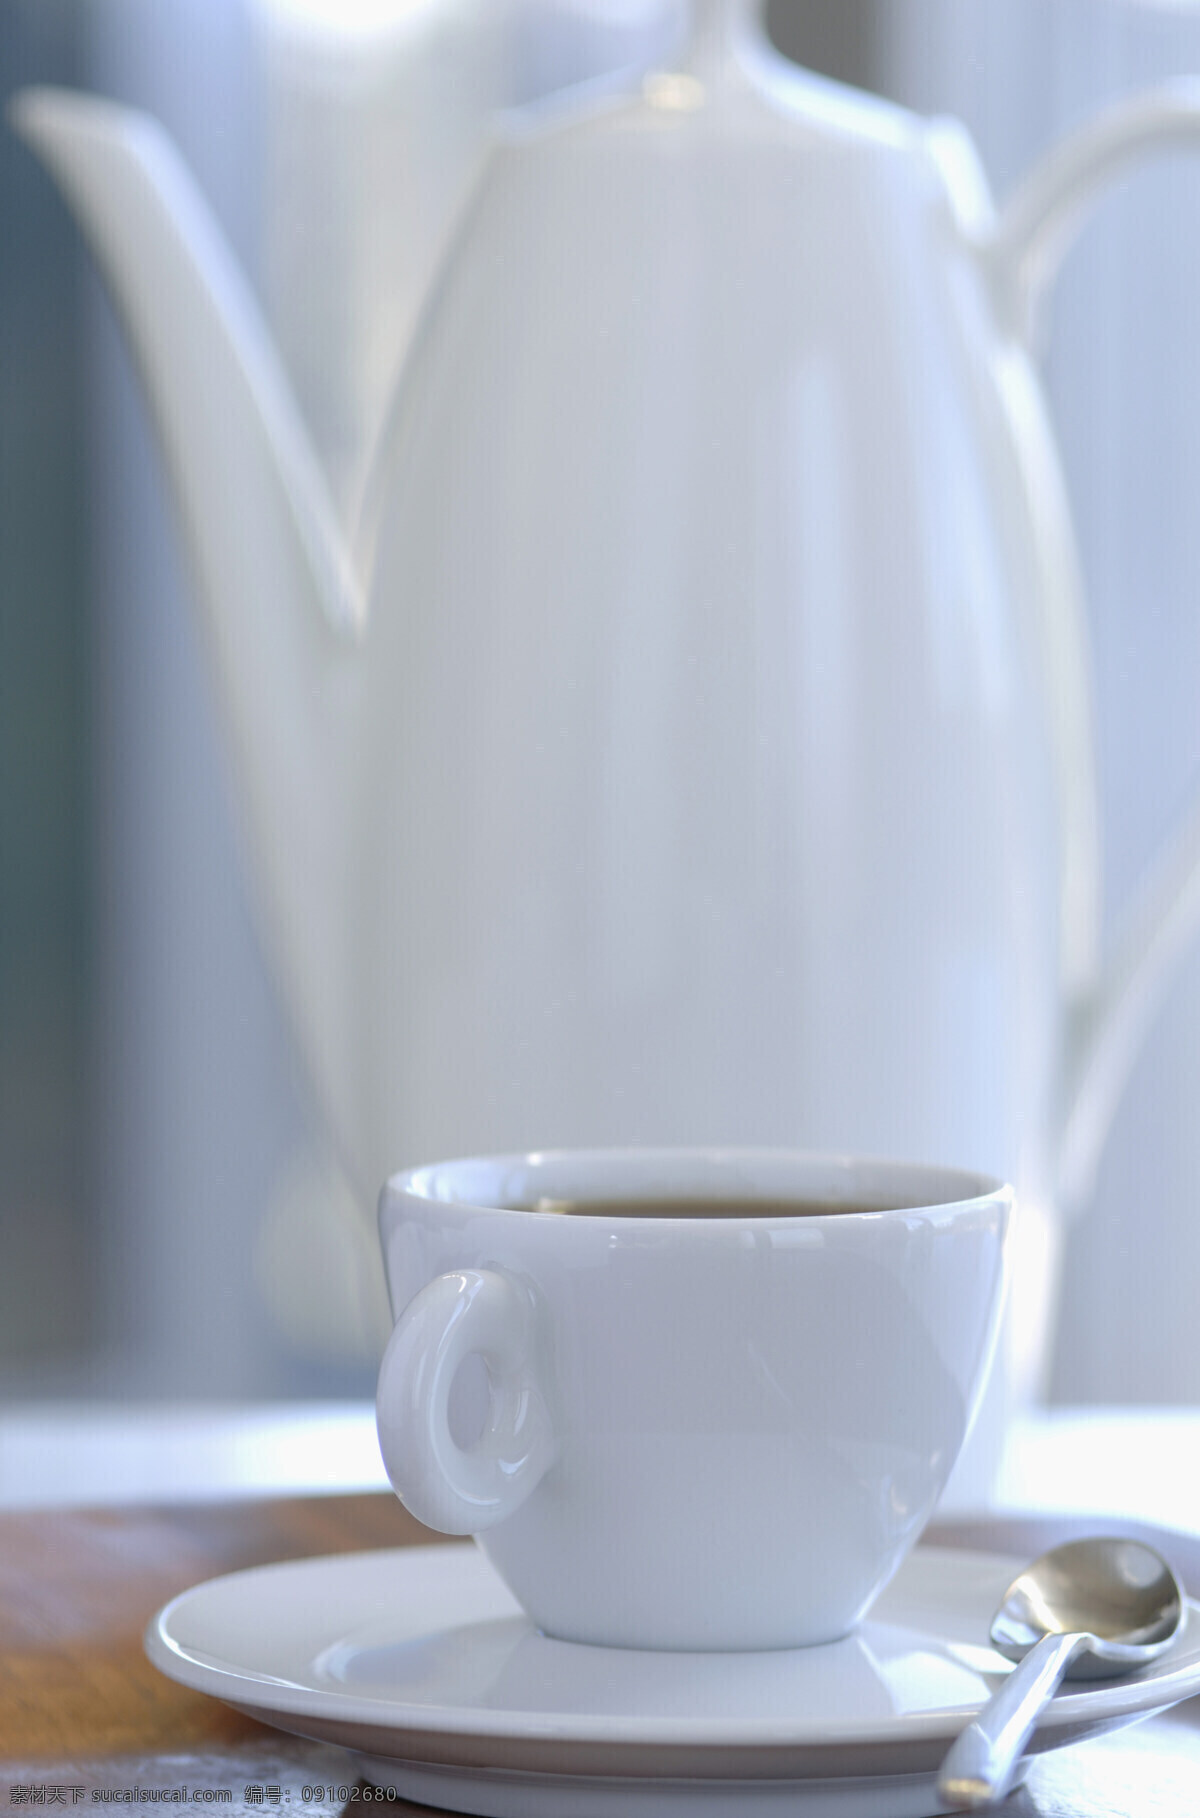 一杯 咖啡 饮料 浓香 提神 咖啡杯 托盘 白色 勺子 杯具 高清图片 咖啡图片 餐饮美食